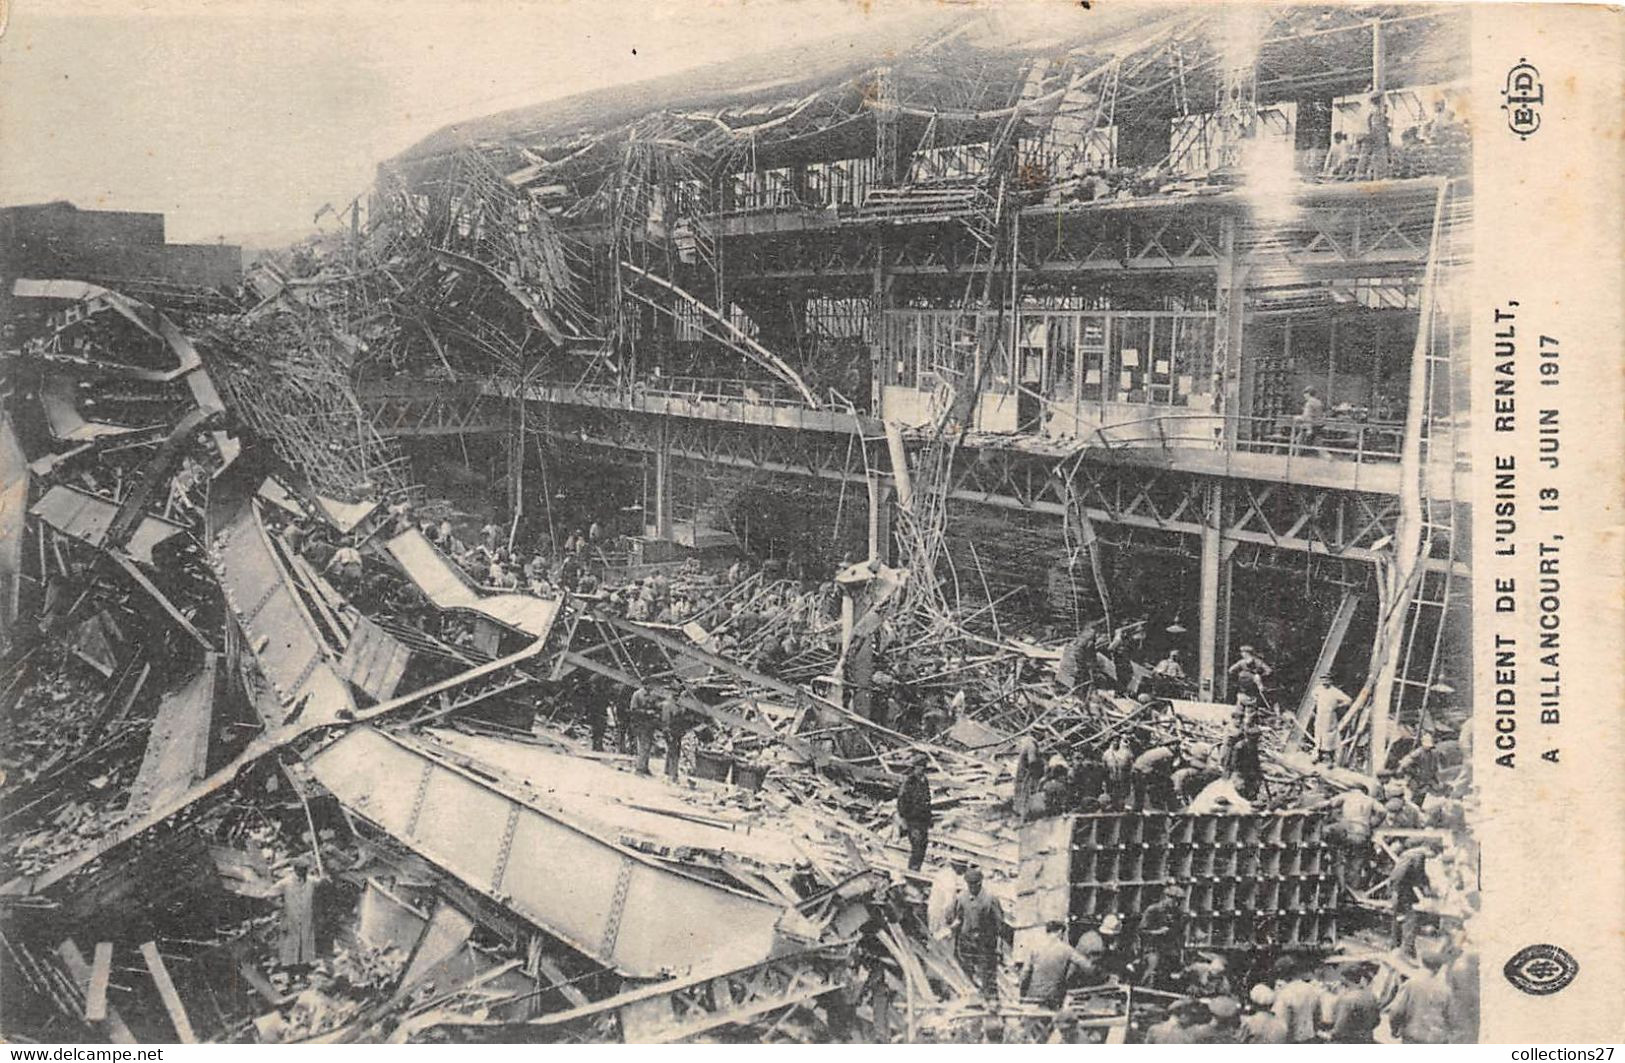 92-BOULOGNE-BILLANCOURT- ACCIDENT DE L'USINE RENAULT- 13 JUIN 1917 - Boulogne Billancourt